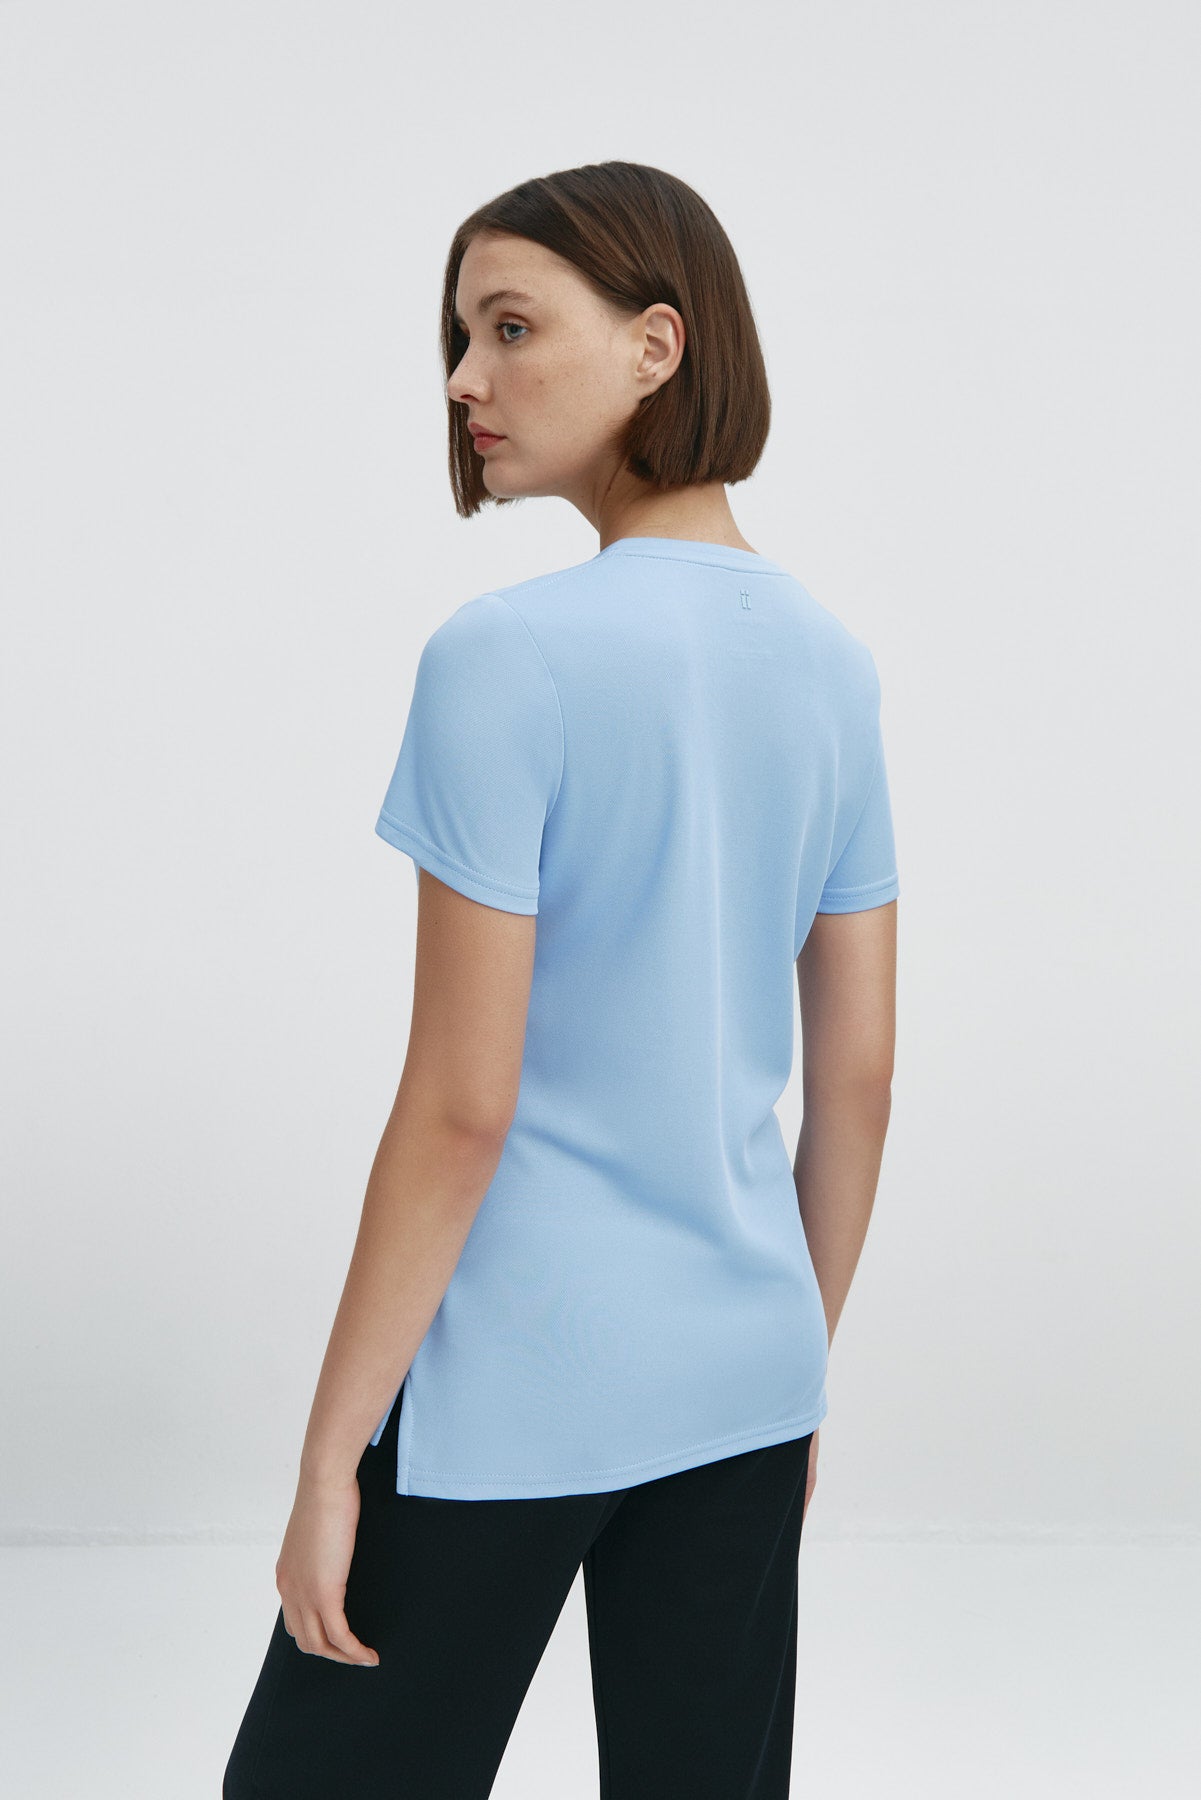 Top para mujer sin mangas con escote pico en color azul niebla, básico y perfecto para el verano. Foto espalda